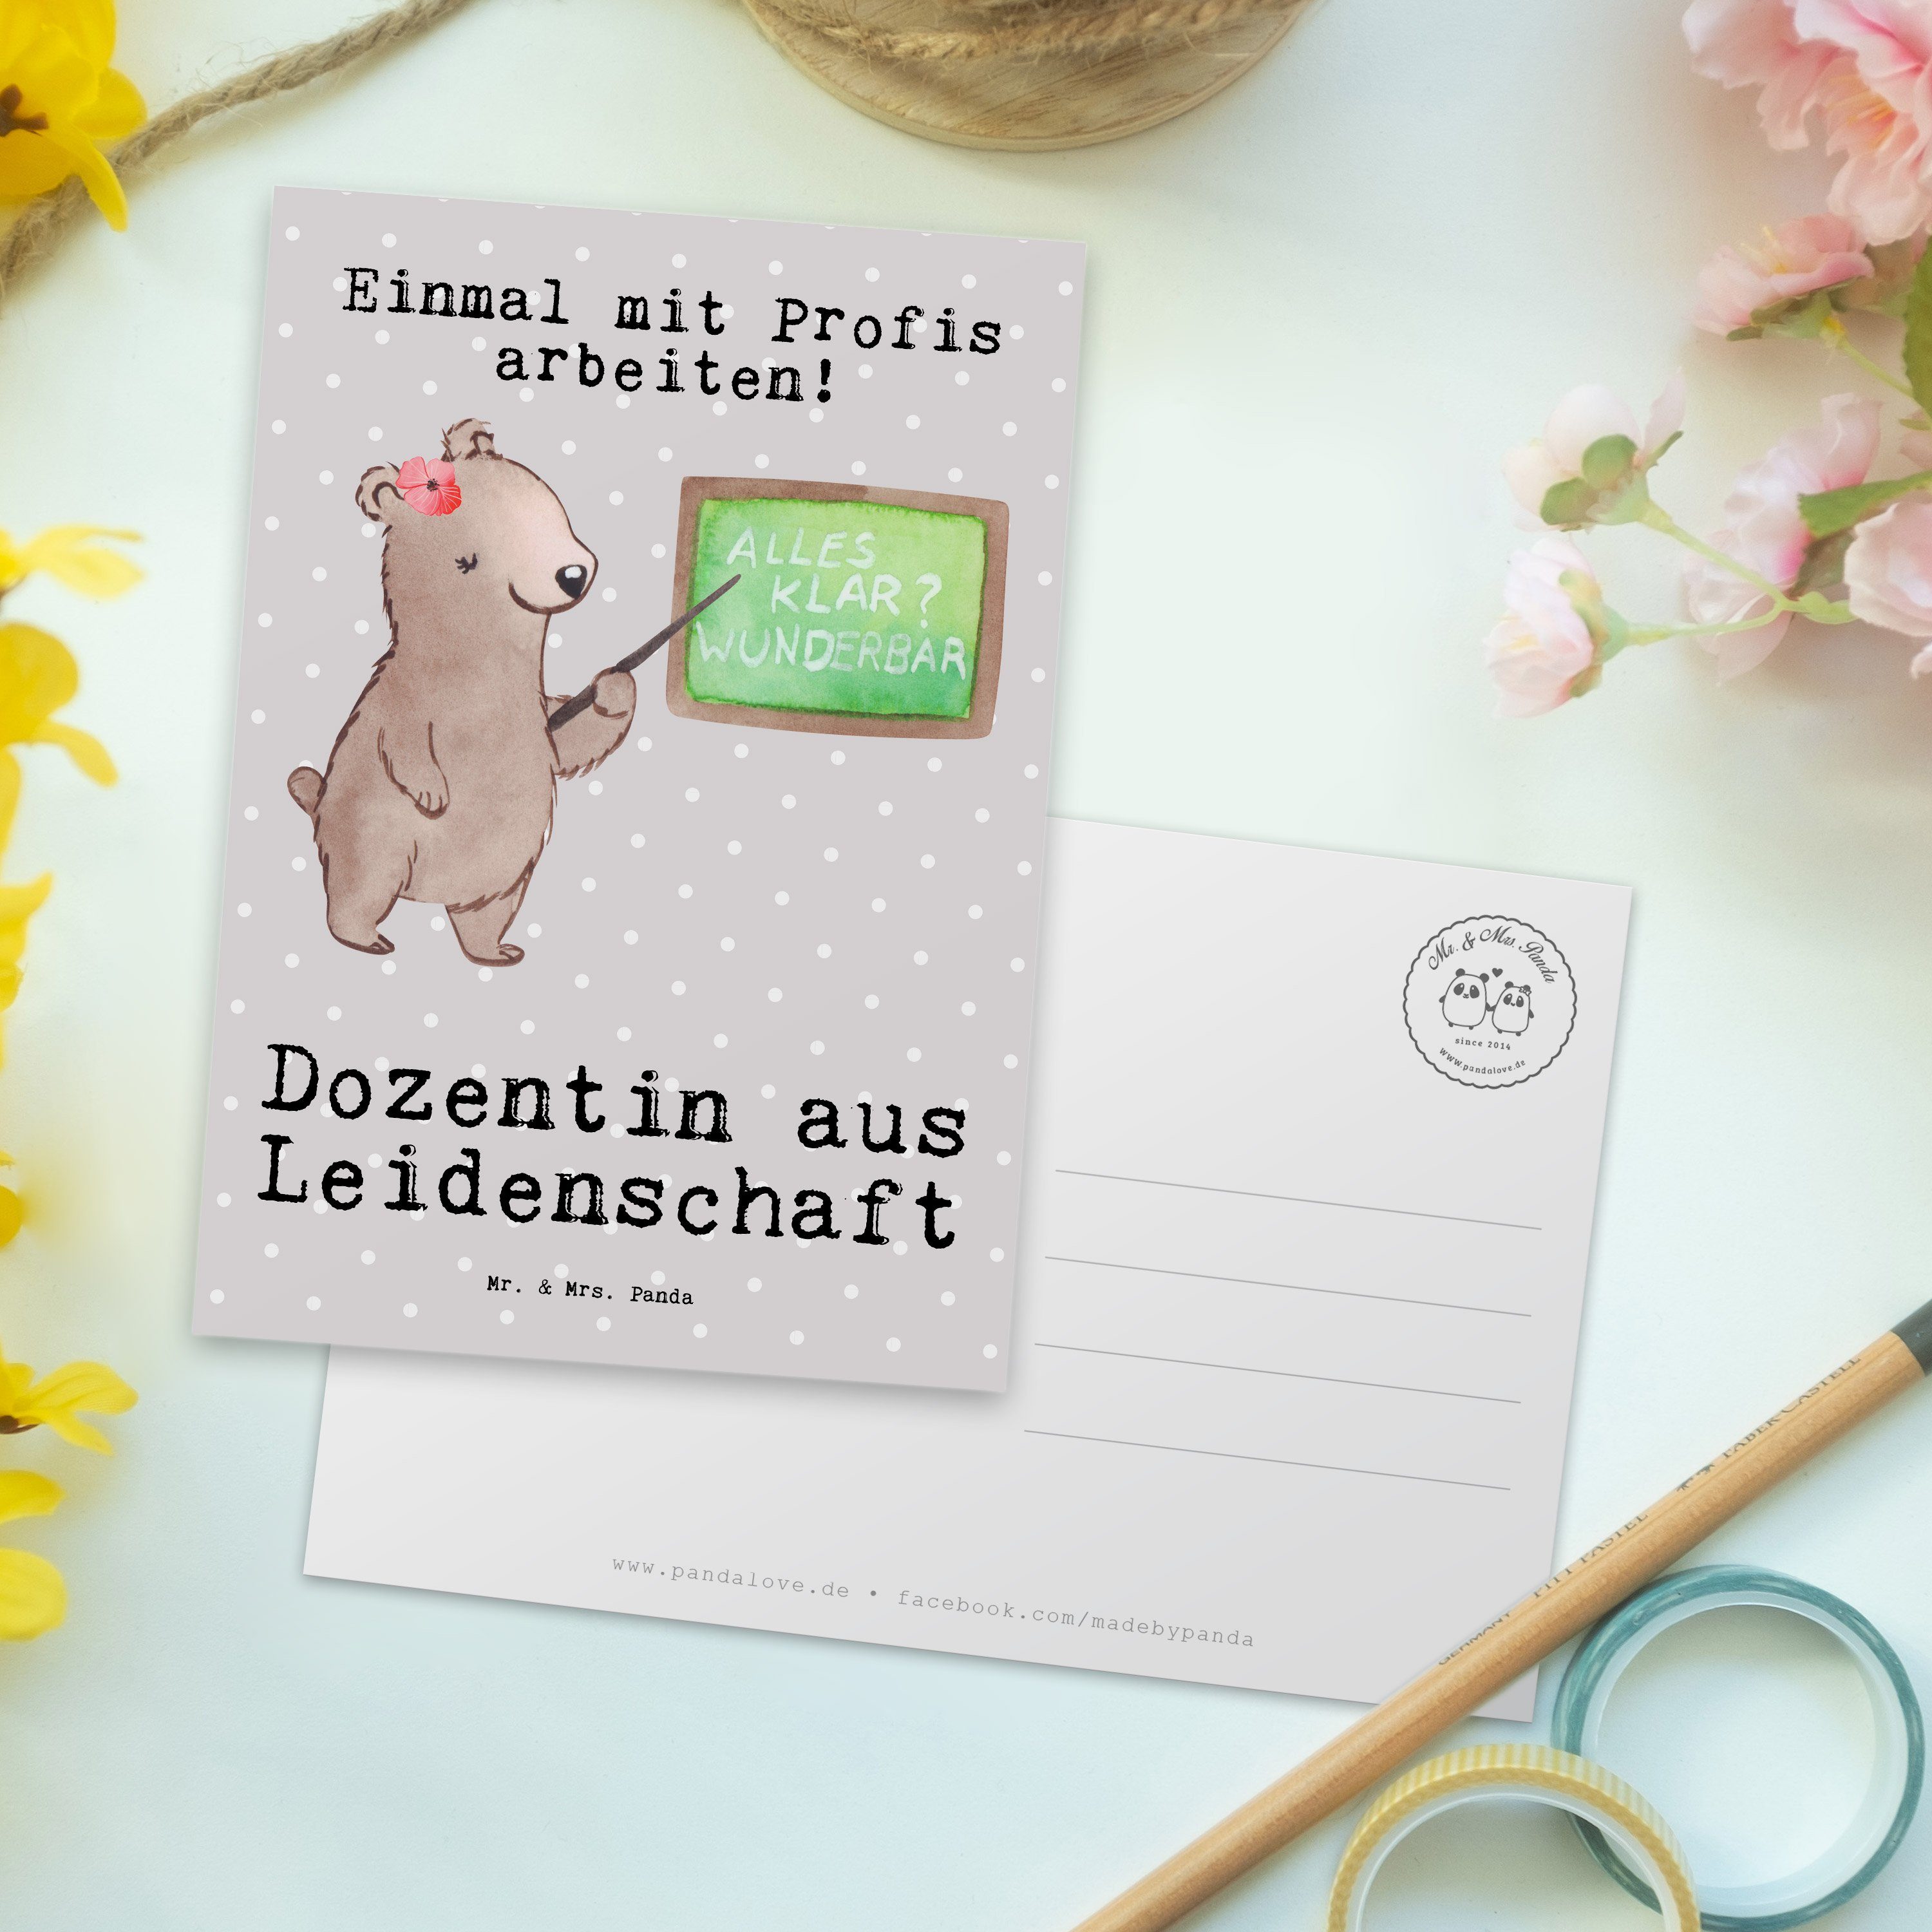 Grau Schenken, Mrs. Leidenschaft Mr. Pastell Akadem - & Panda aus Dozentin Postkarte - Geschenk,